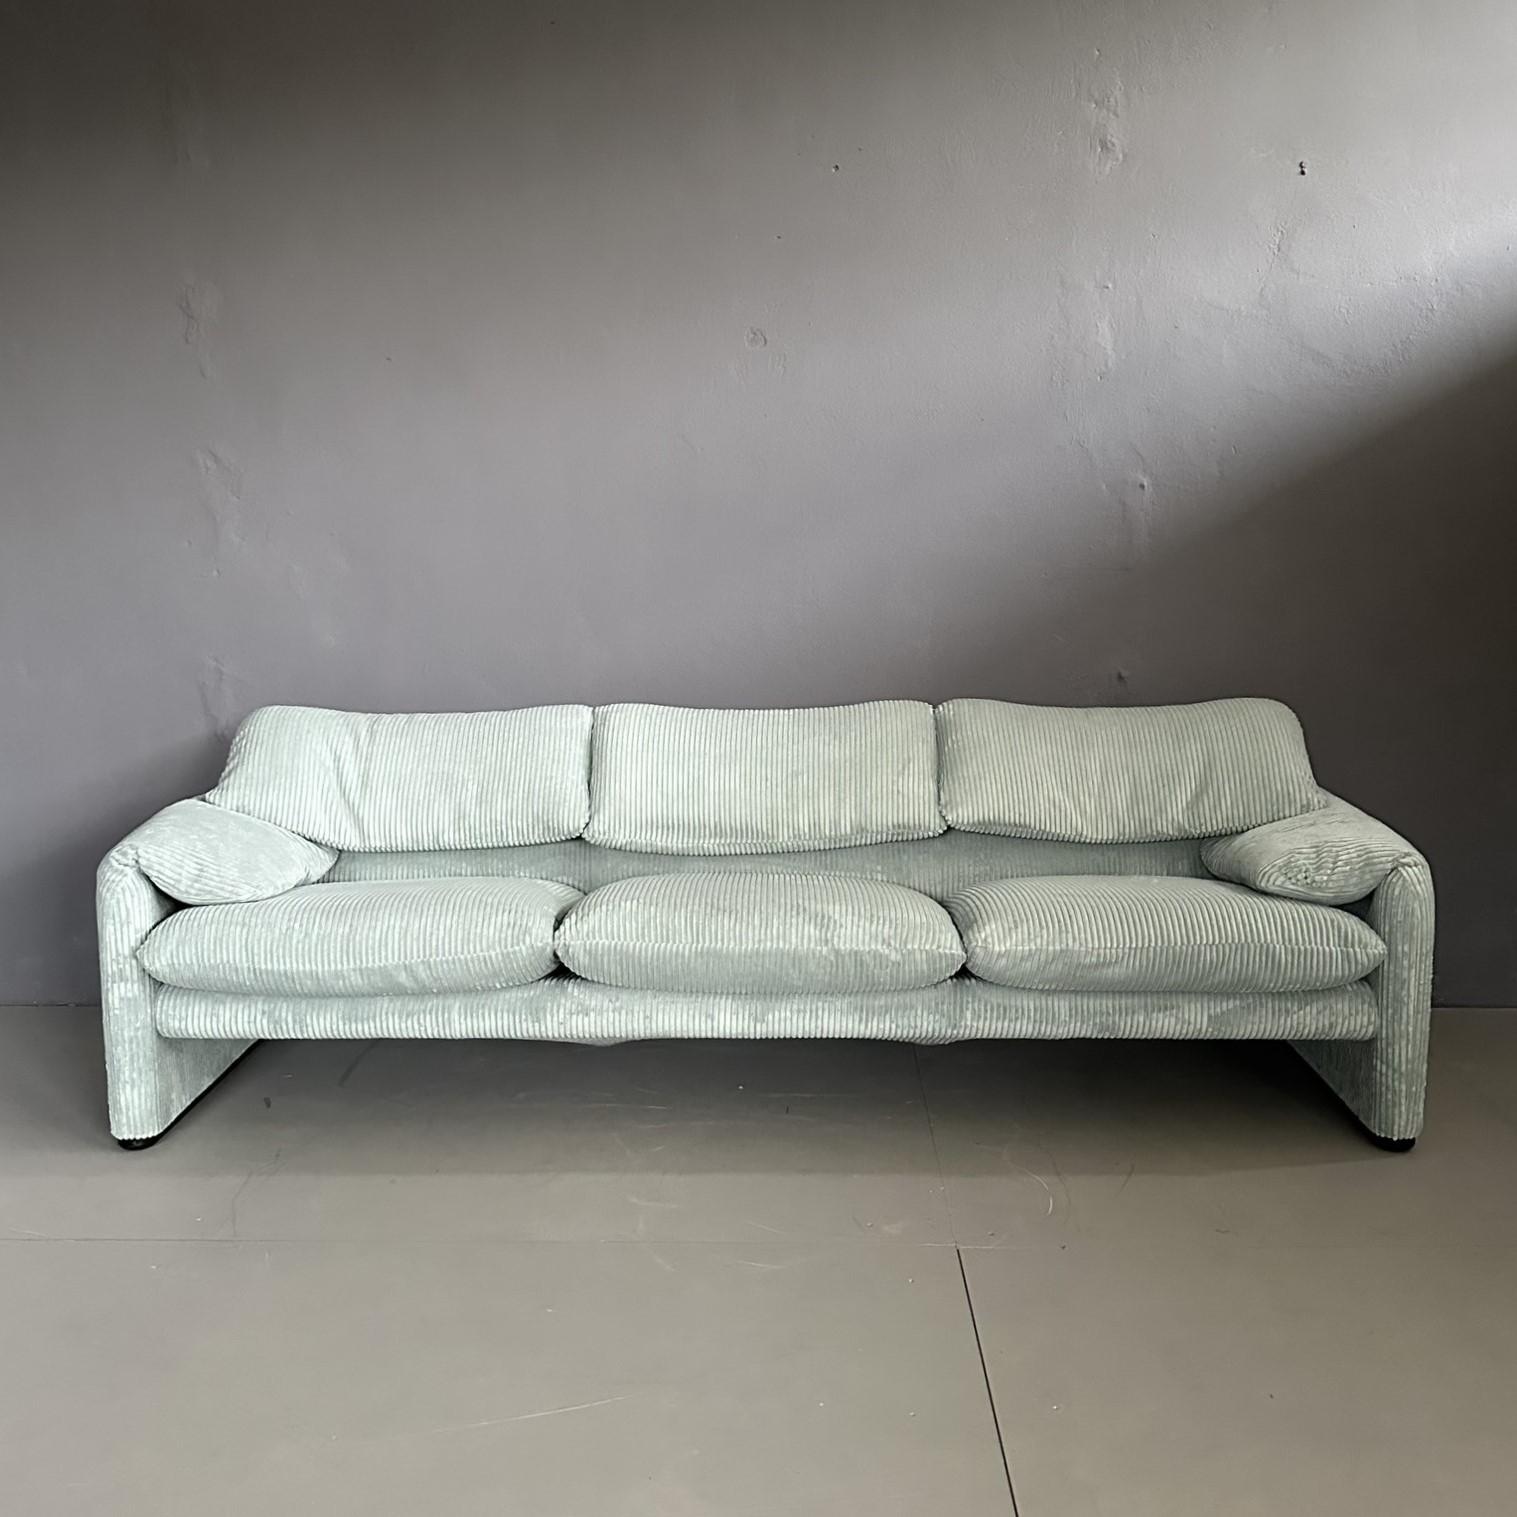 Dreisitziges Sofa Maralunga, entworfen von Vico Magistretti für Cassina in den 1970er Jahren.
Gerippter hellmintgrüner Stoffbezug.
Die Bewegung der Rückenlehne und der seitlichen Armlehnen ist funktionell